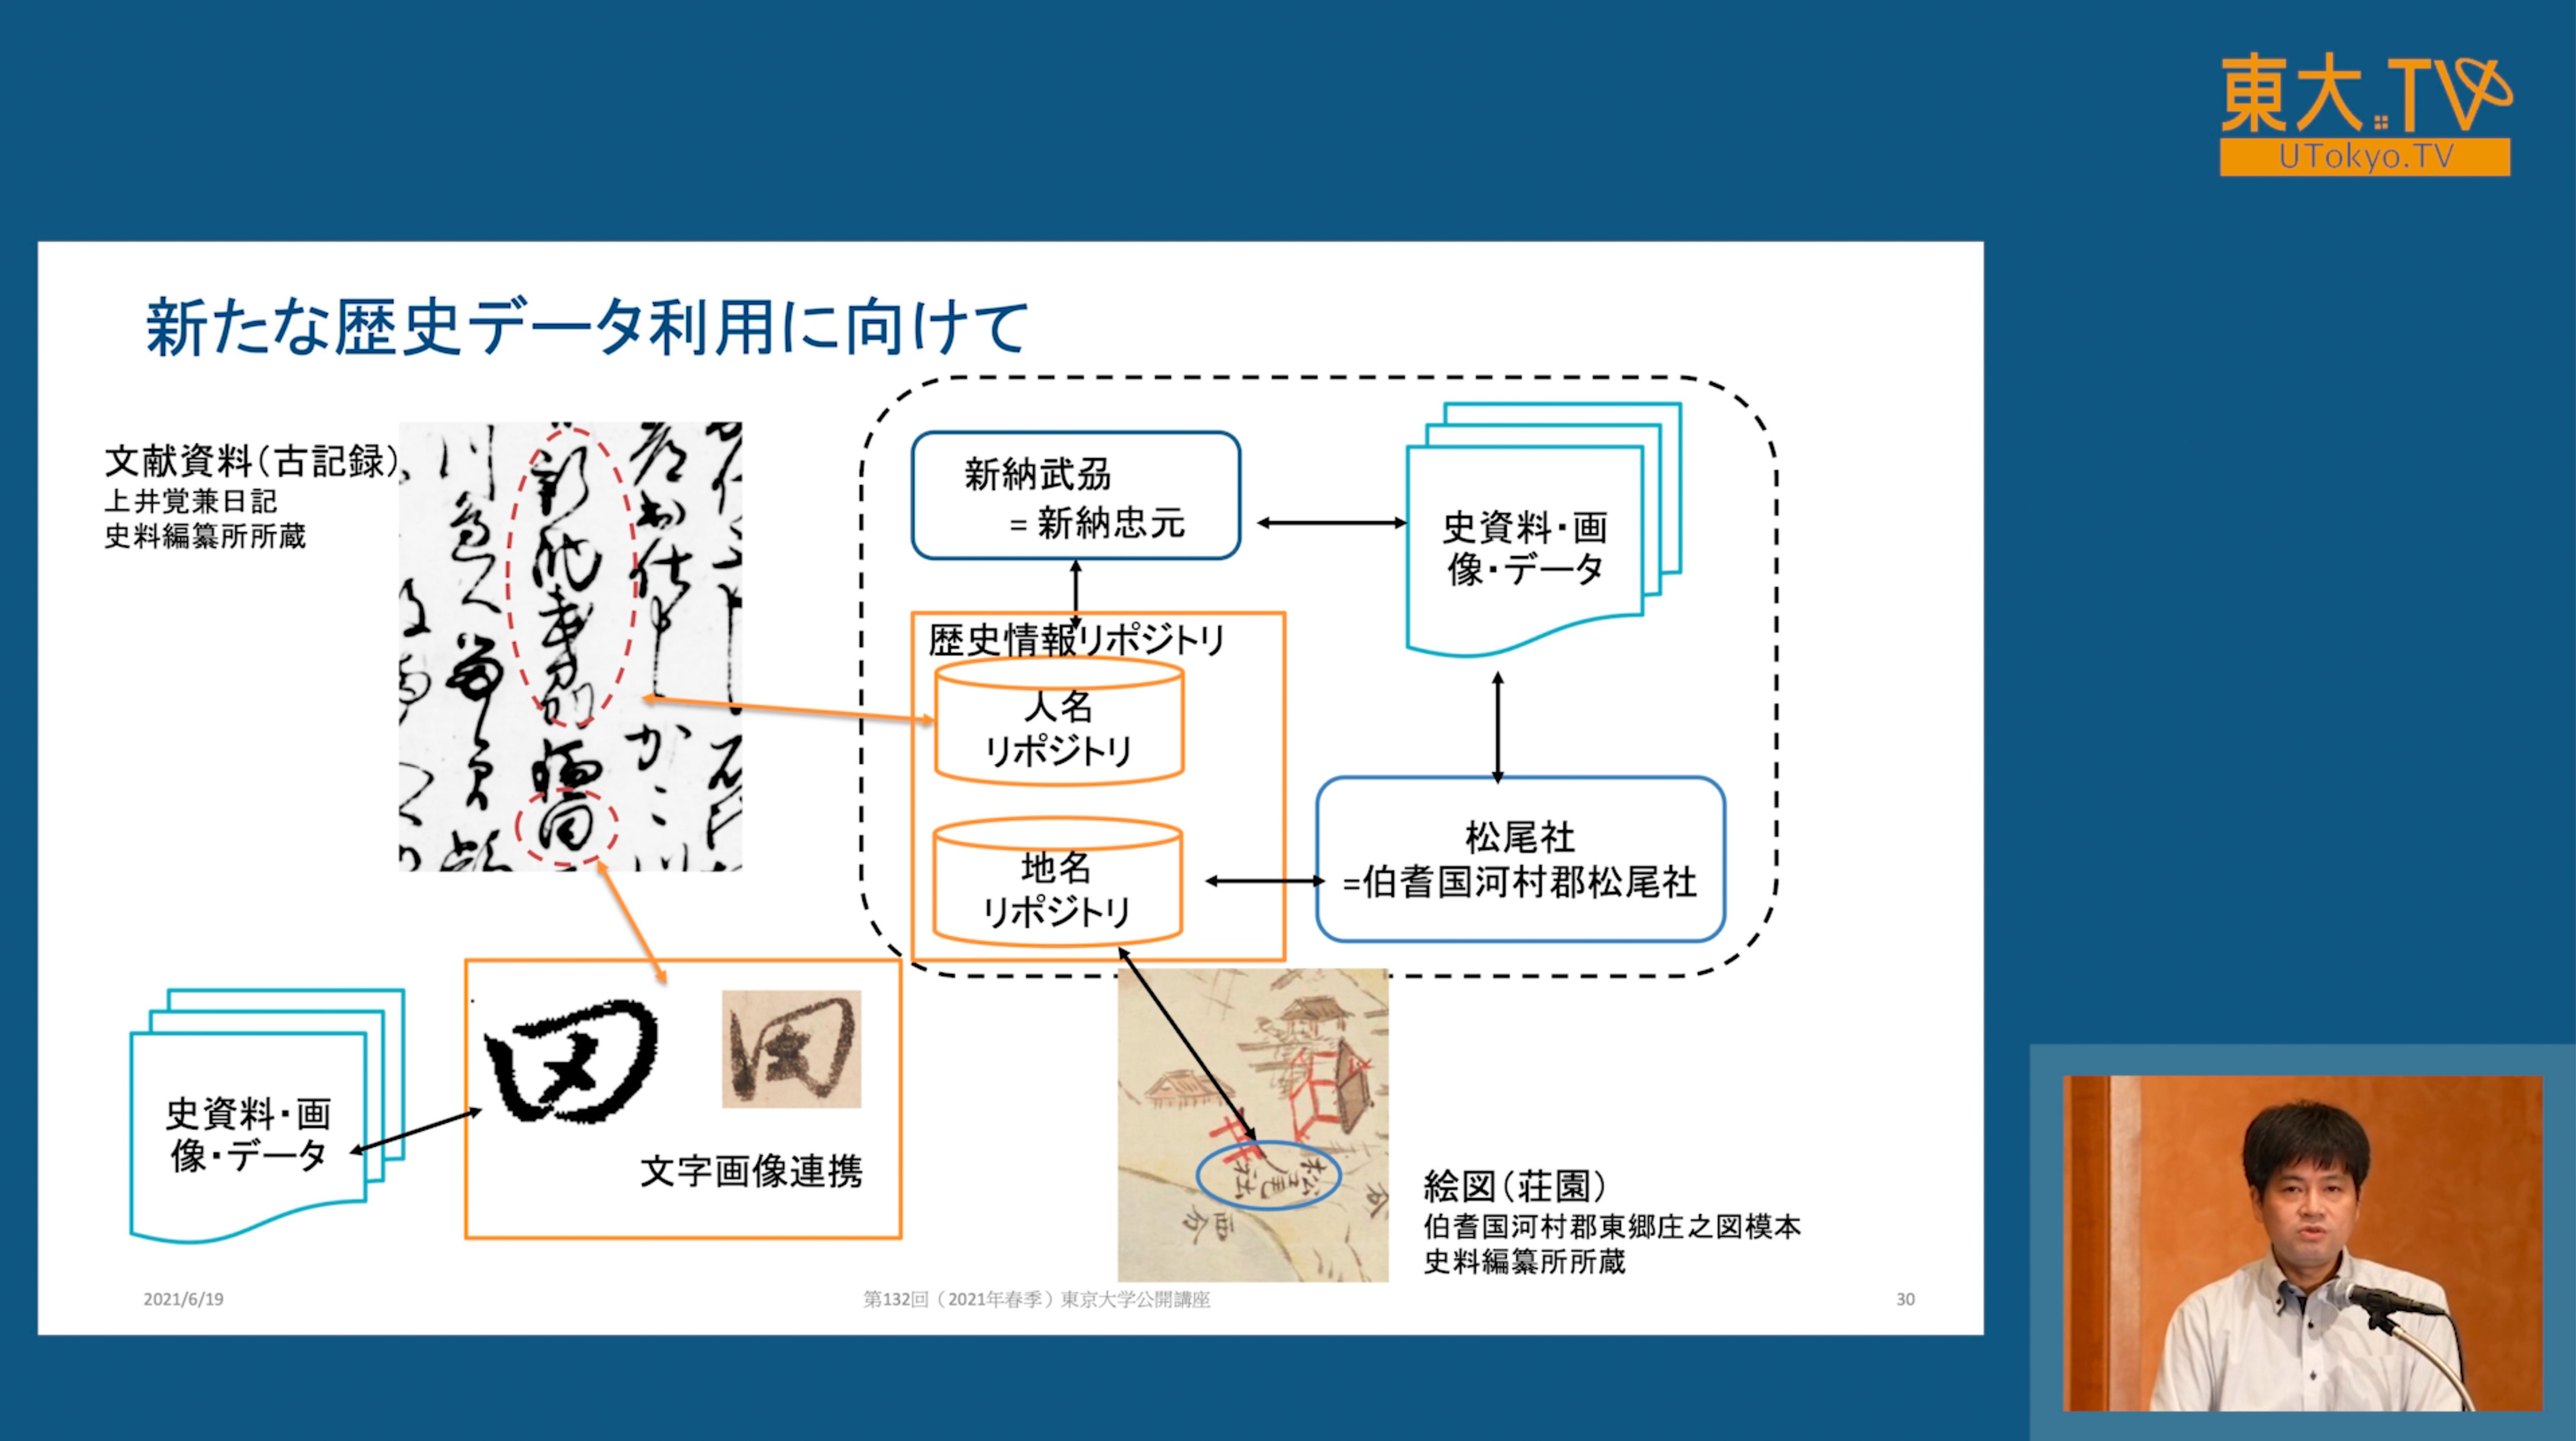 日本史研究を取り巻くデータの収集と管理